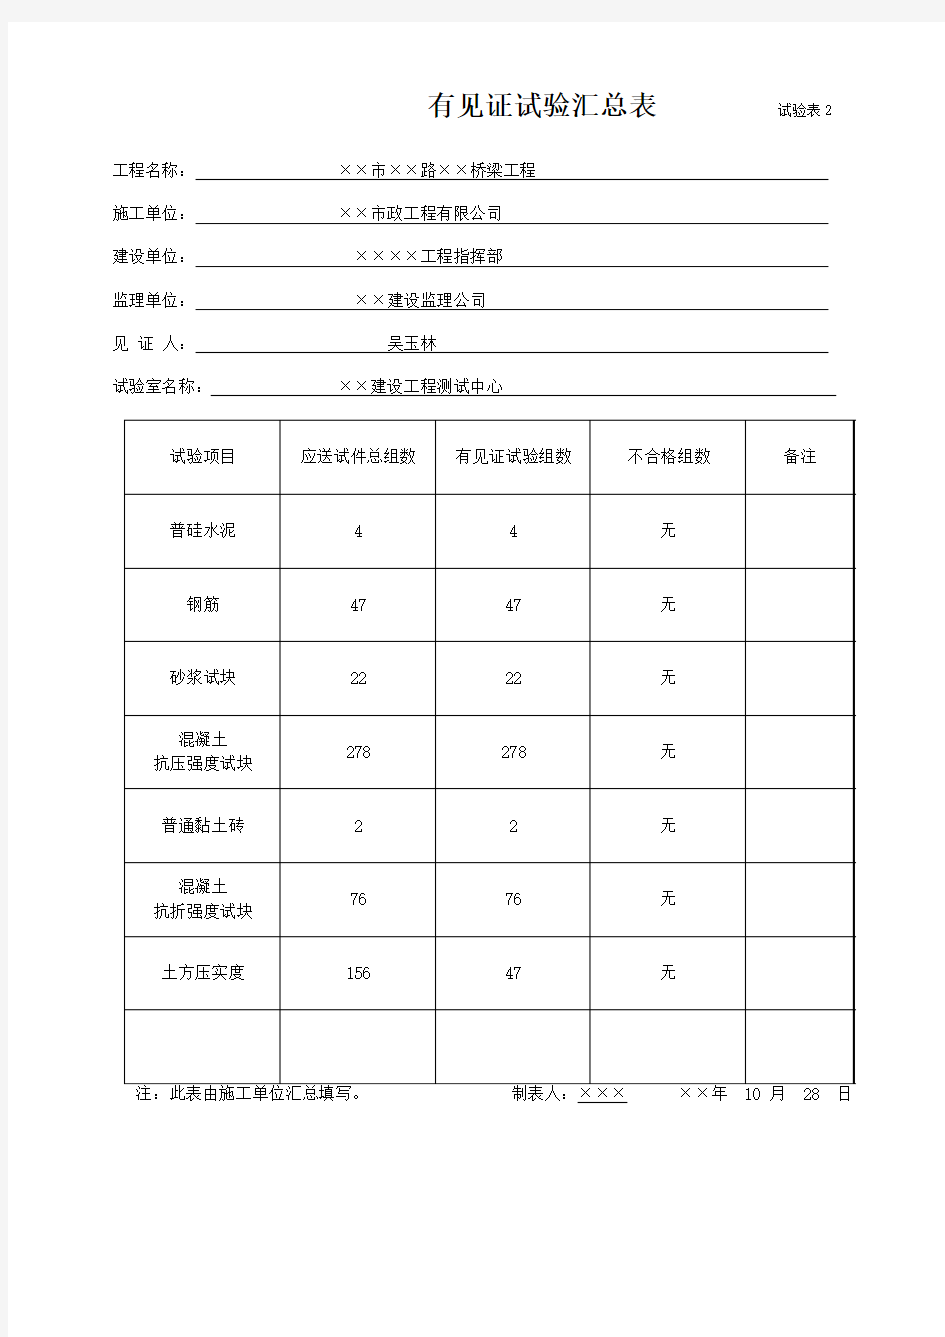 江苏地区市政工程资料标准表格填写范例--试验表